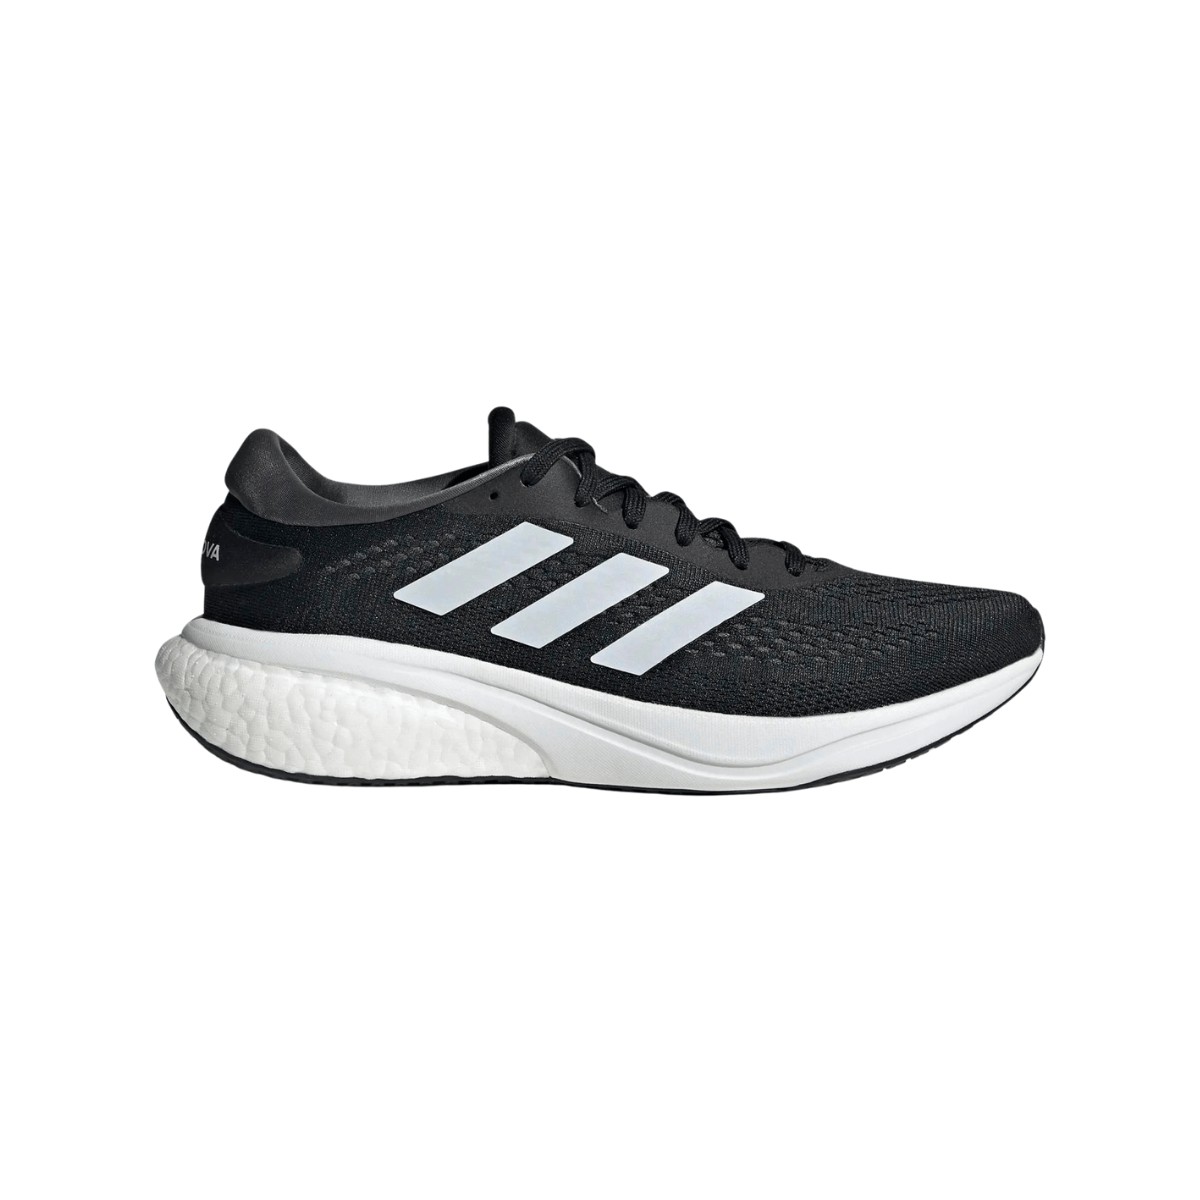 Adidas Supernova 2.0 Shoes Black White AW22, Size UK 7.5